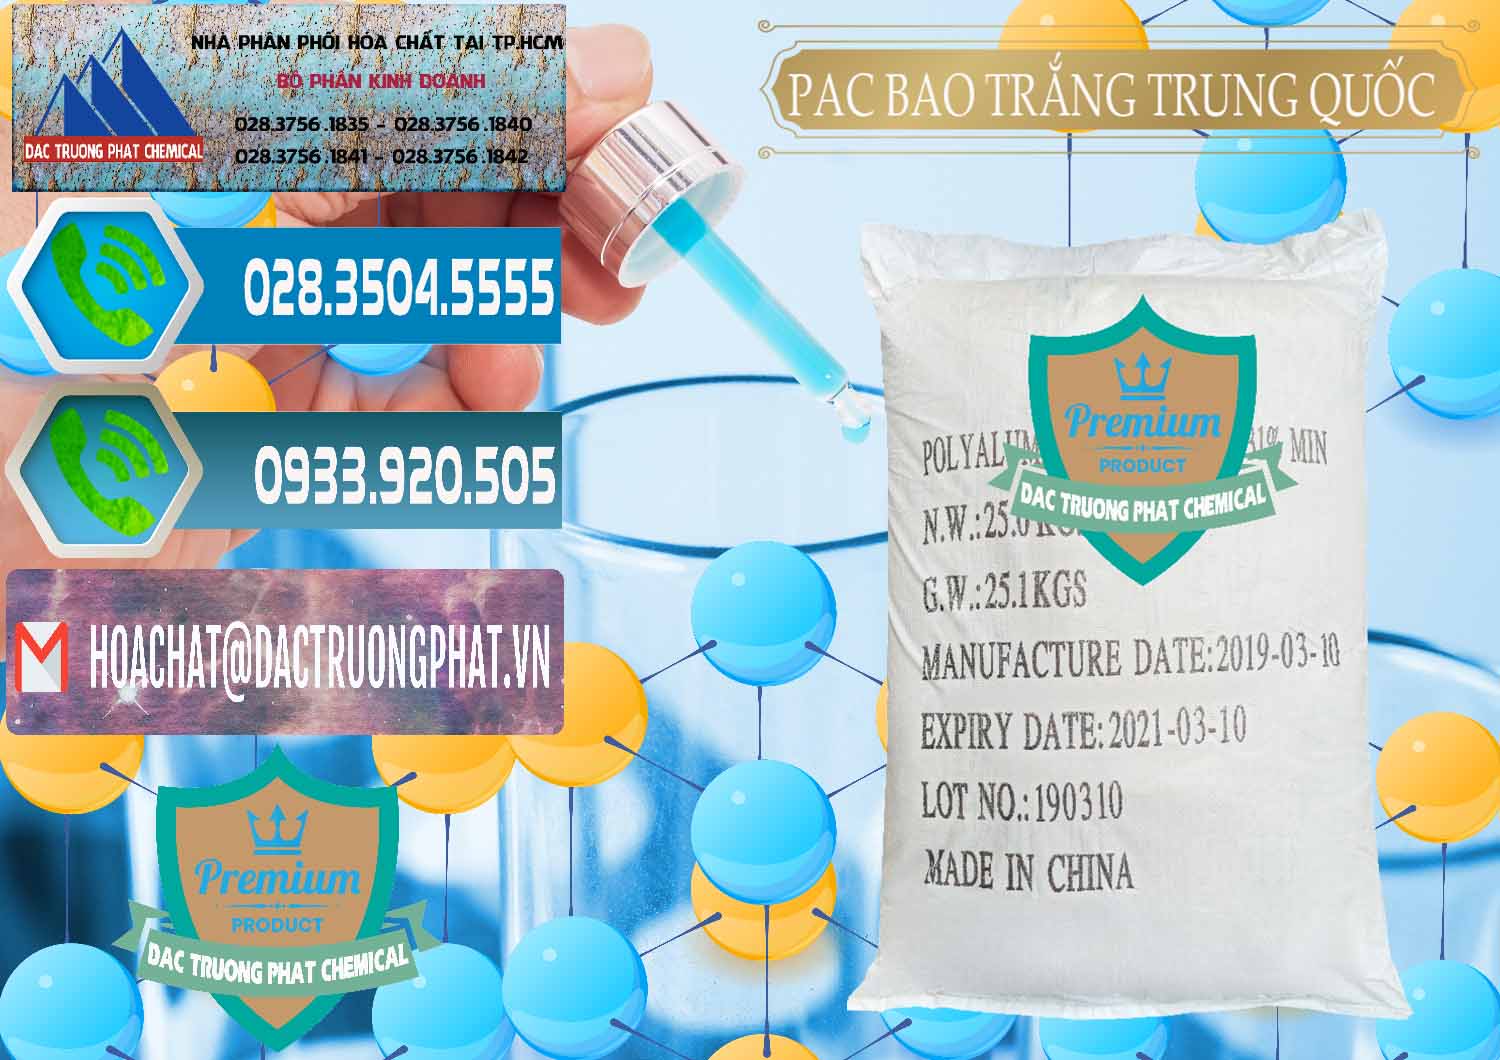 Nơi chuyên phân phối và bán PAC - Polyaluminium Chloride Bao Trắng Trung Quốc China - 0108 - Cung ứng - phân phối hóa chất tại TP.HCM - congtyhoachat.net